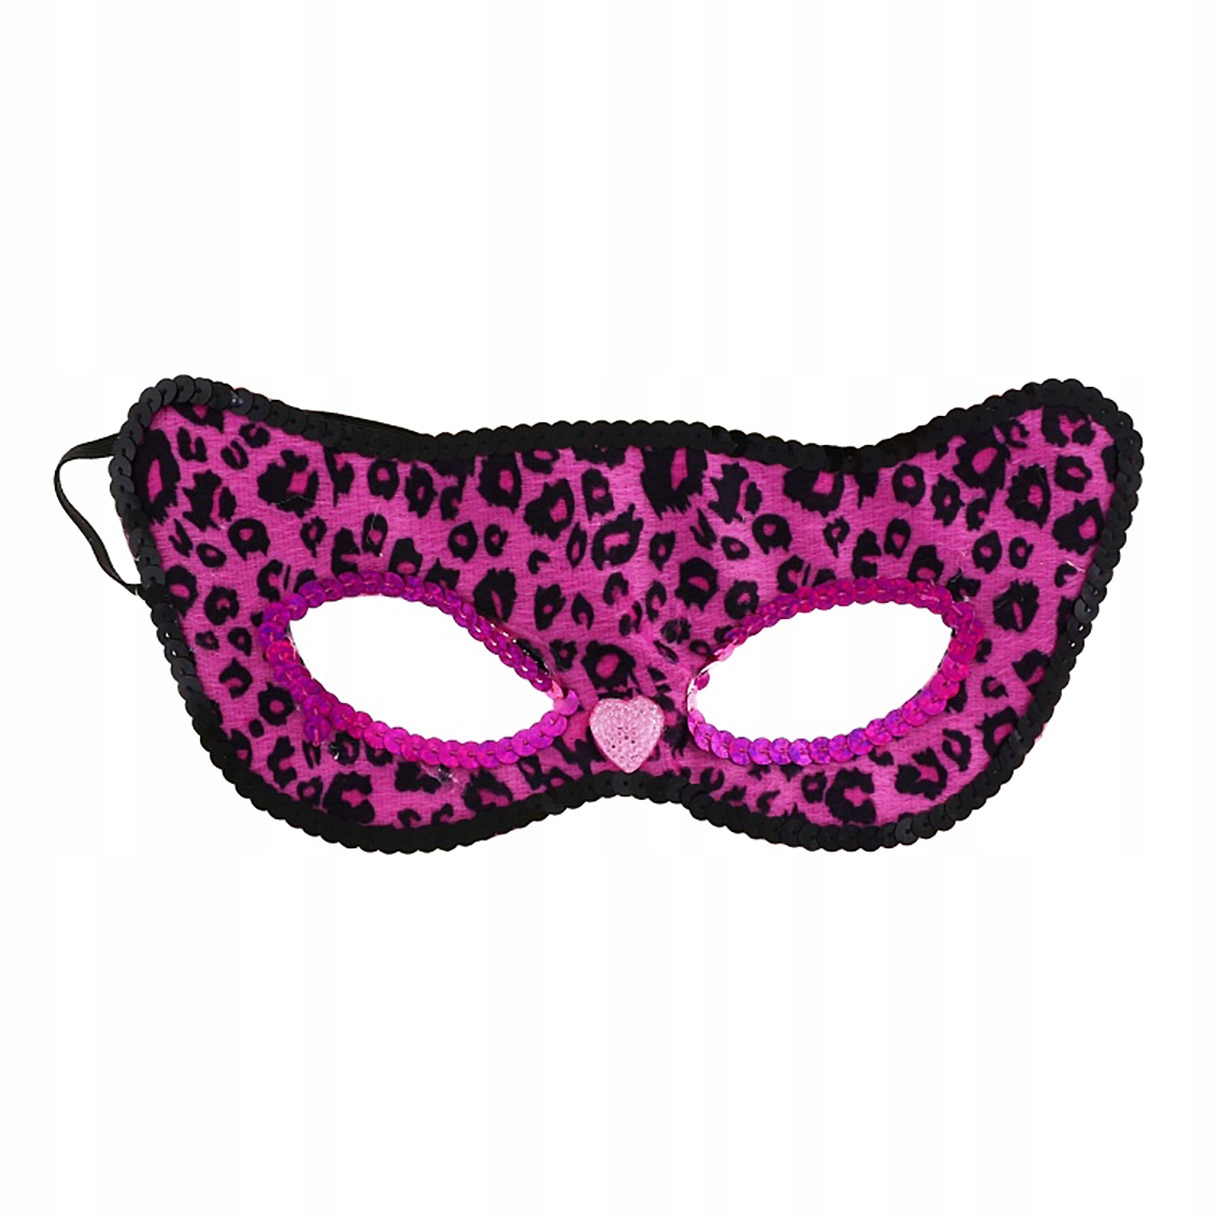 Розовая маска цена. Розовая маска. Розовая пантера маска. Маска пантеры. Карнавальная маска пантера.